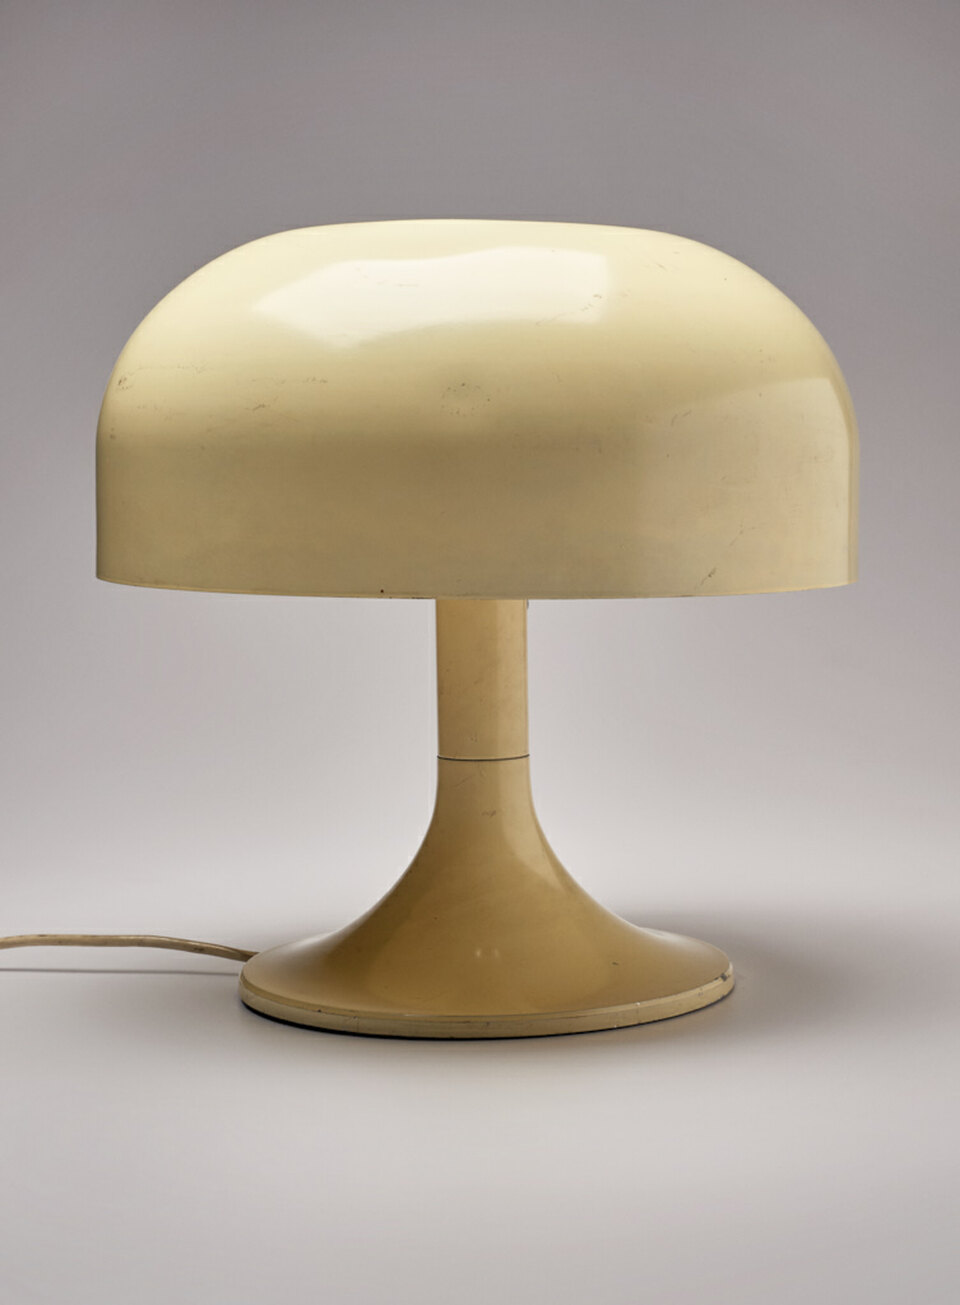 Asztali lámpa - A Vargánya lámpacsalád része. Borz Kováts Sándor, 1968 - 1969, Budapest.Forrás: az Iparművészeti Múzeum adatbázisa
